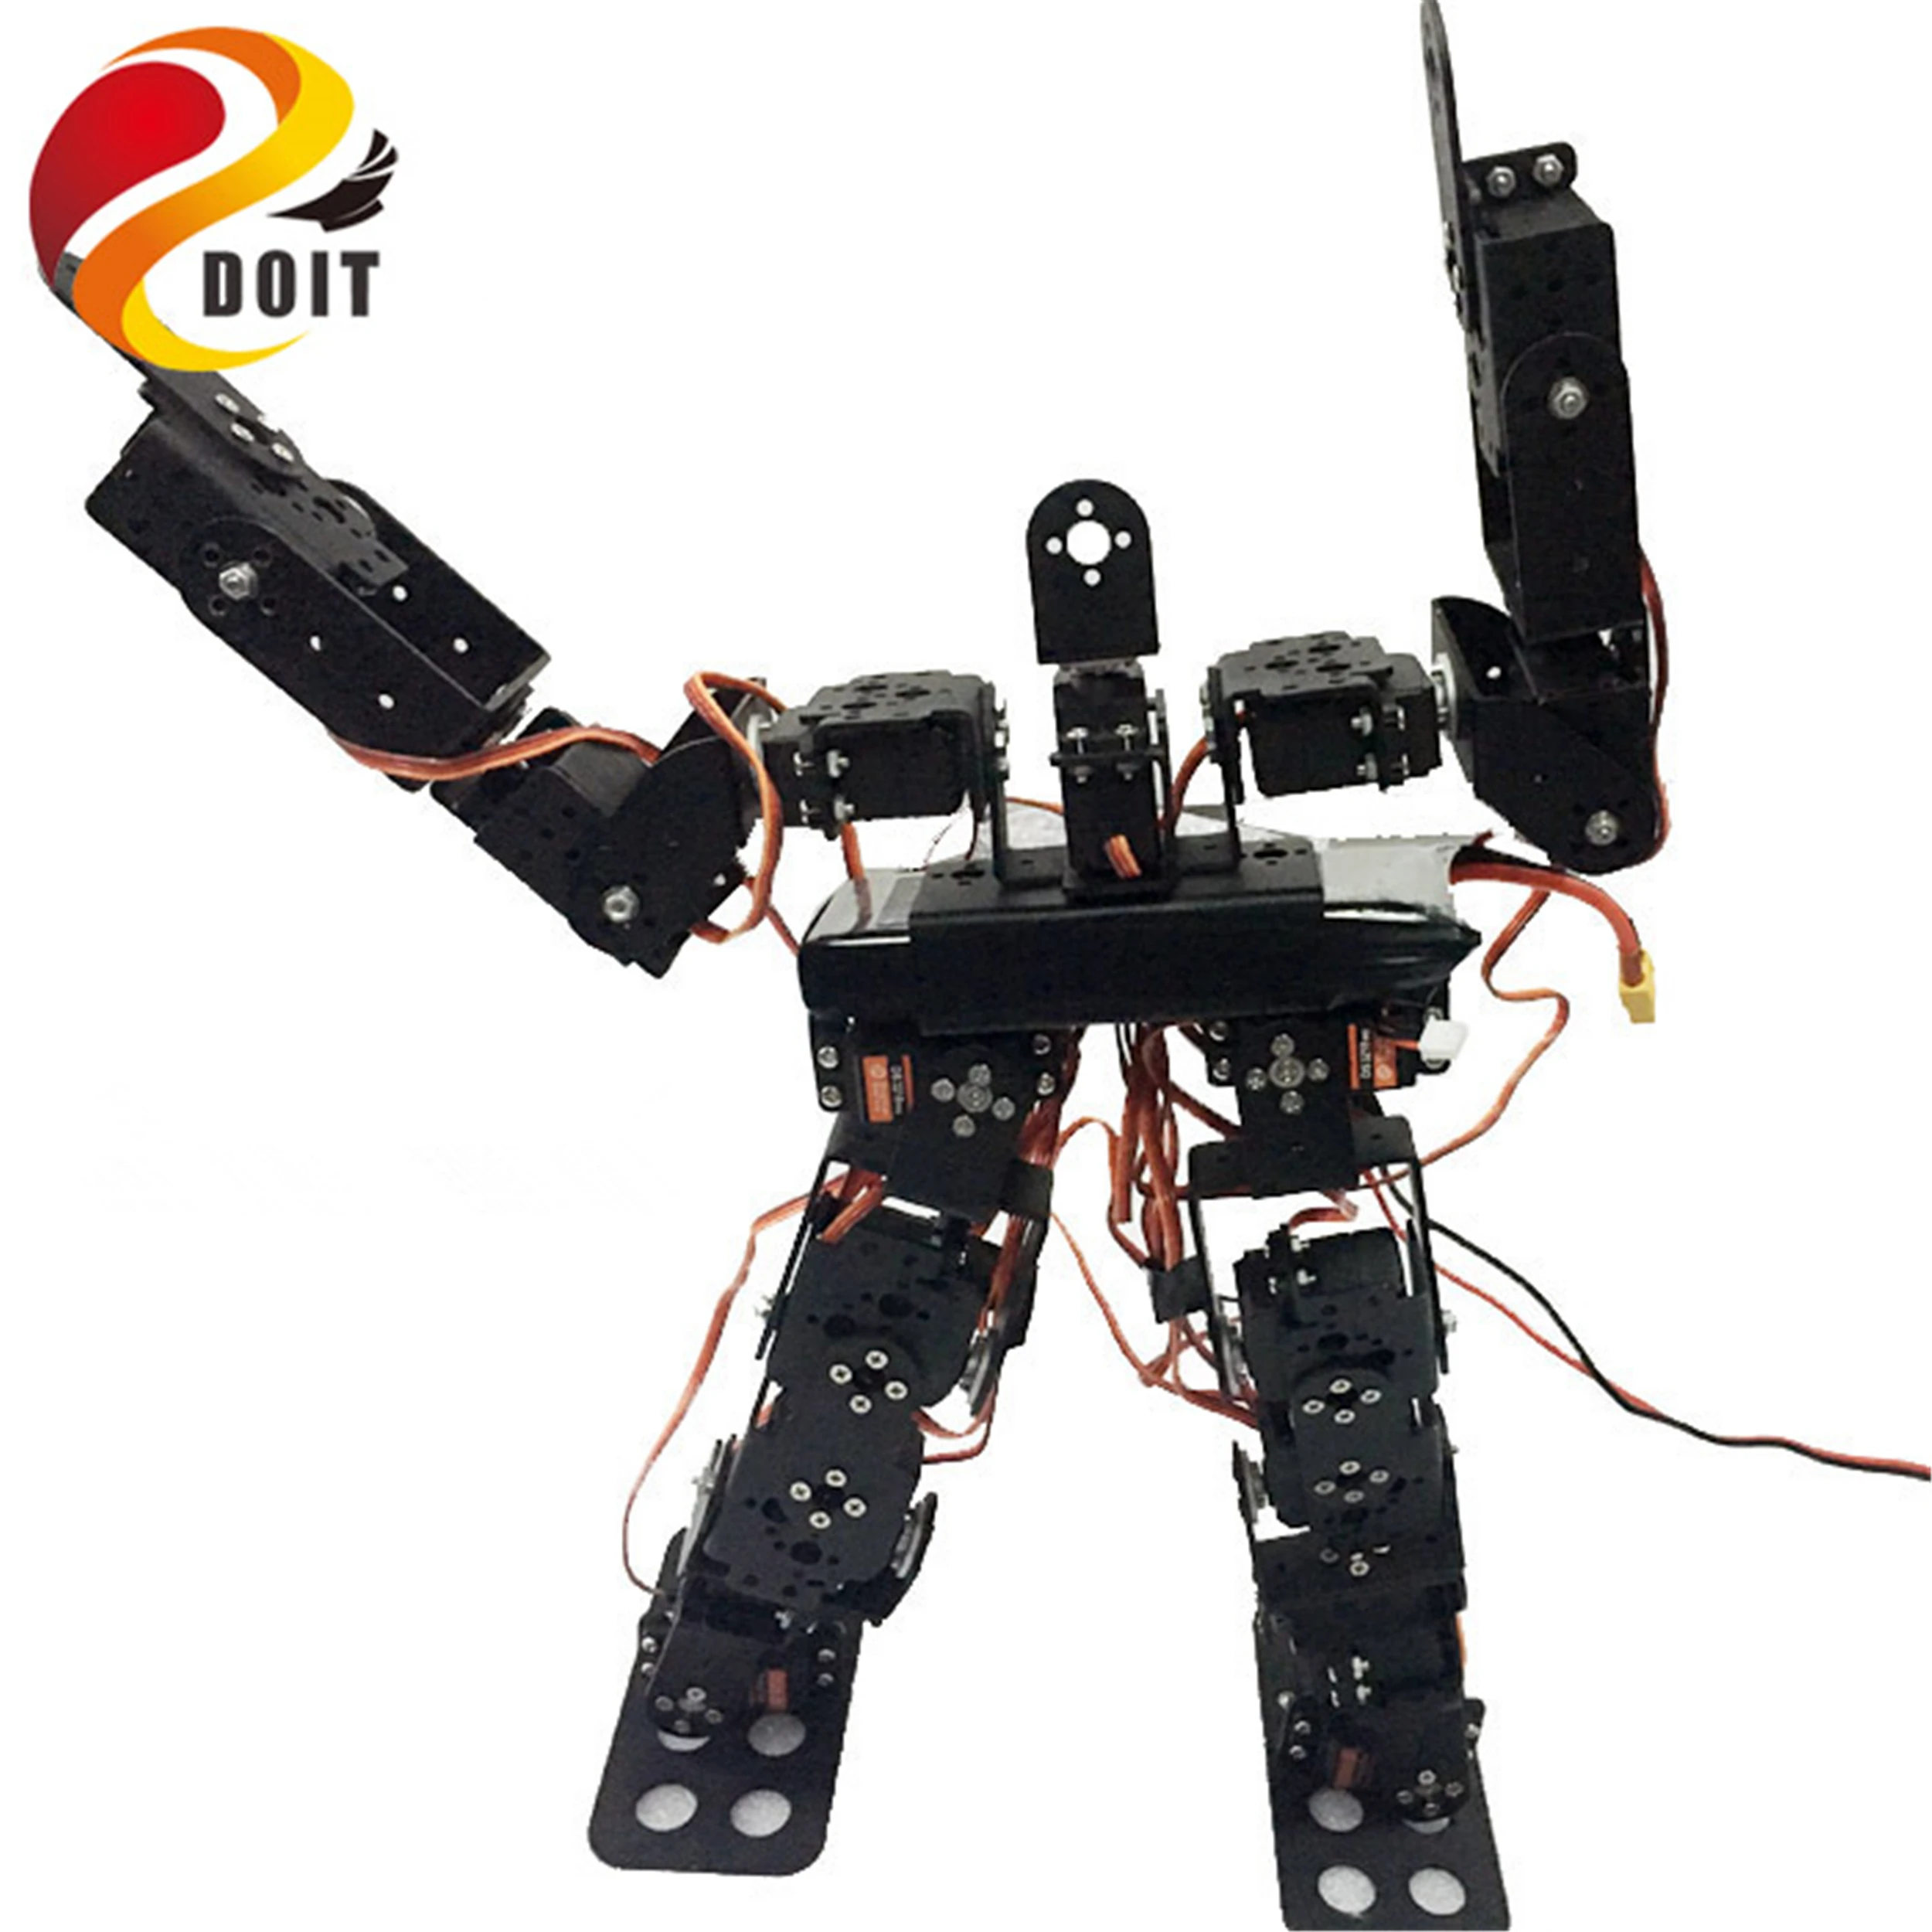 SZDOIT 17DOF металлический человекоподобный робот ходьба/двуногий робот модель многофункциональная платформа с 17 шт металлическая Шестерня сервоприводы развивающие